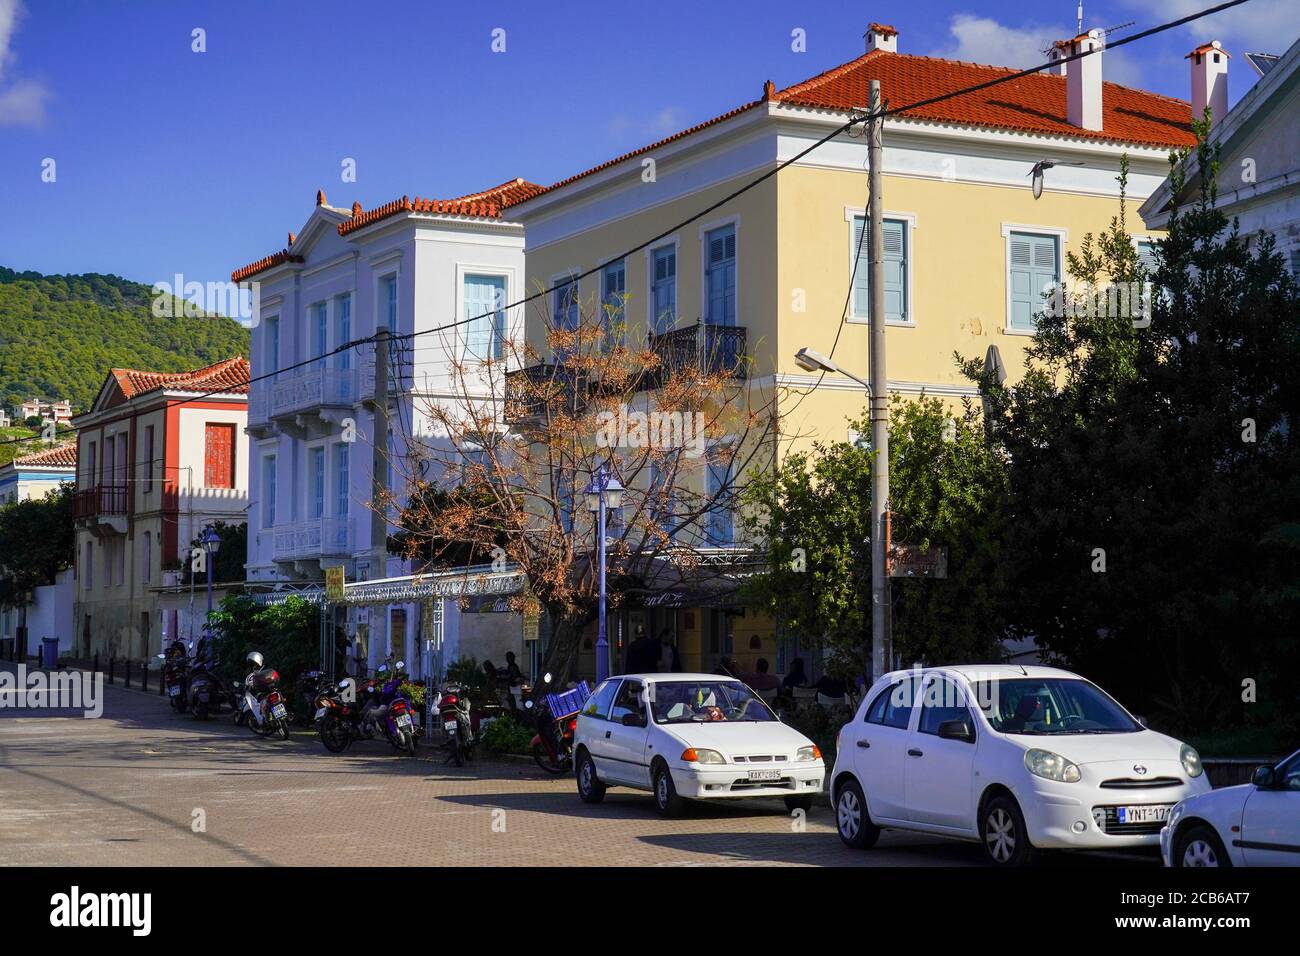 Stadtbild von Poros ein kleines griechisches Inselpaar im südlichen Teil des Saronischen Golfs, Griechenland Stockfoto